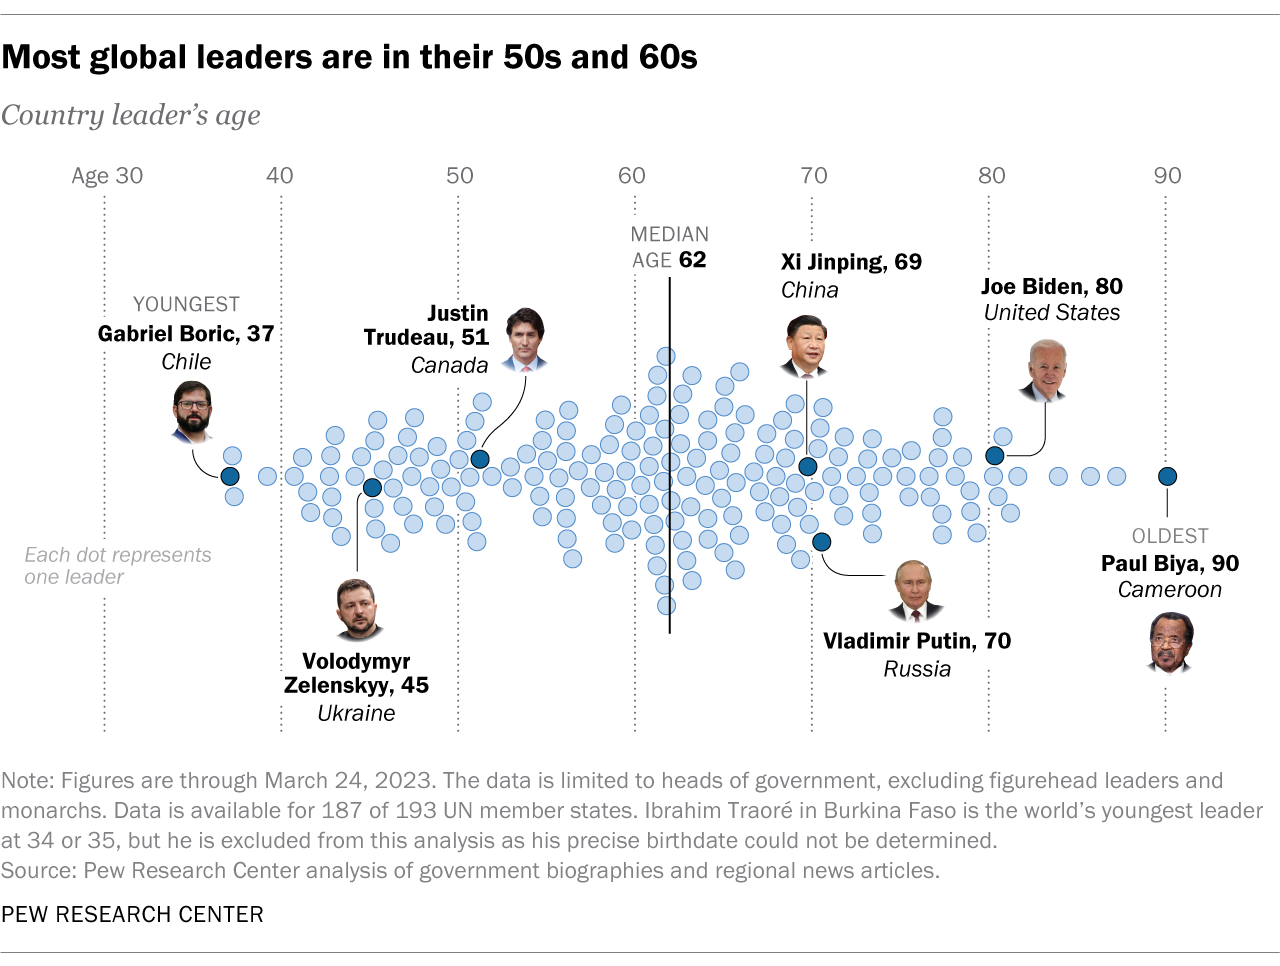 Ilustración de la distribución de las edades de los líderes globales, elaborado por Pew Research Center